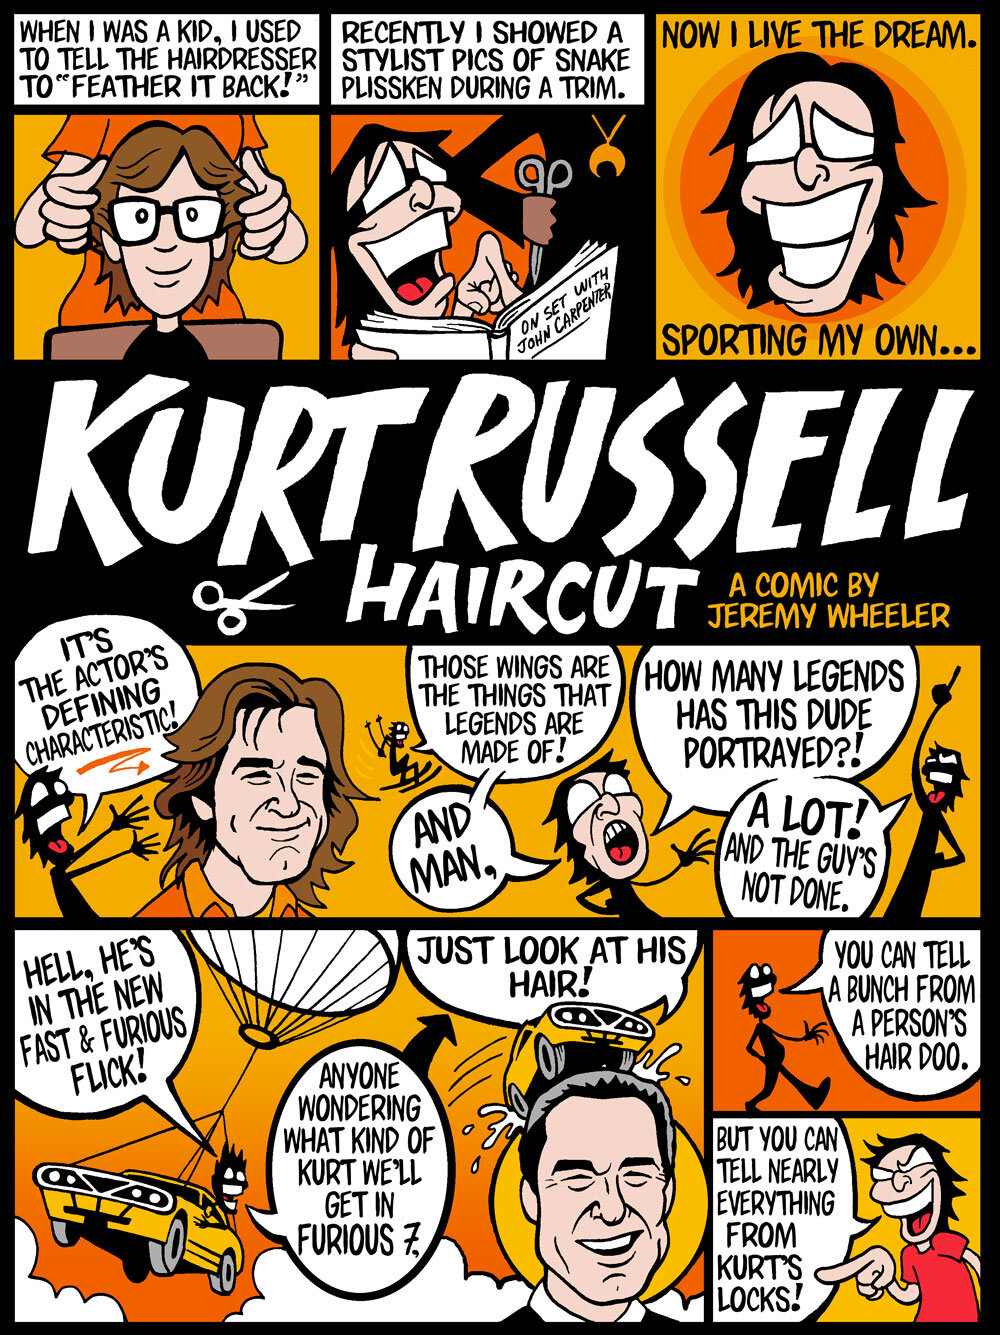 Kurt-Russel-Hair-Comic-Jeremy-Wheeler-1.jpg